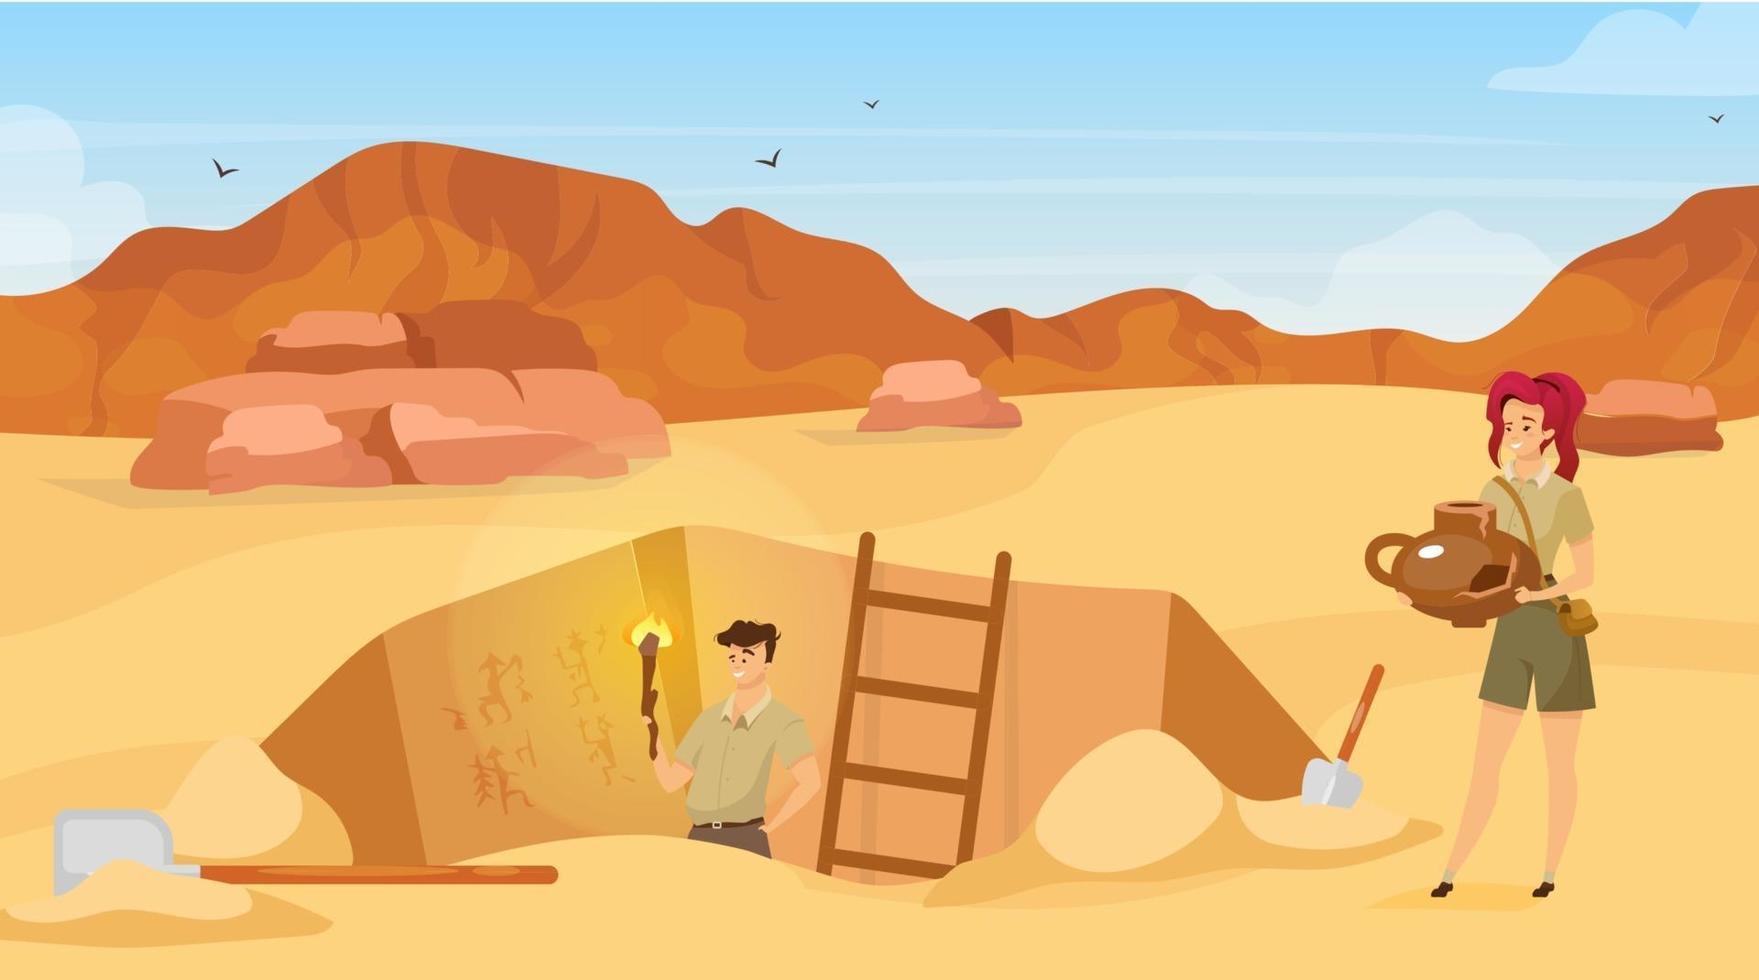 ilustração em vetor plana de escavação. sítio arqueológico, o homem observa pinturas murais. deserto de areia. descoberta de fotos de parede egípcia. buraco no solo na África. fundo de desenho de expedição